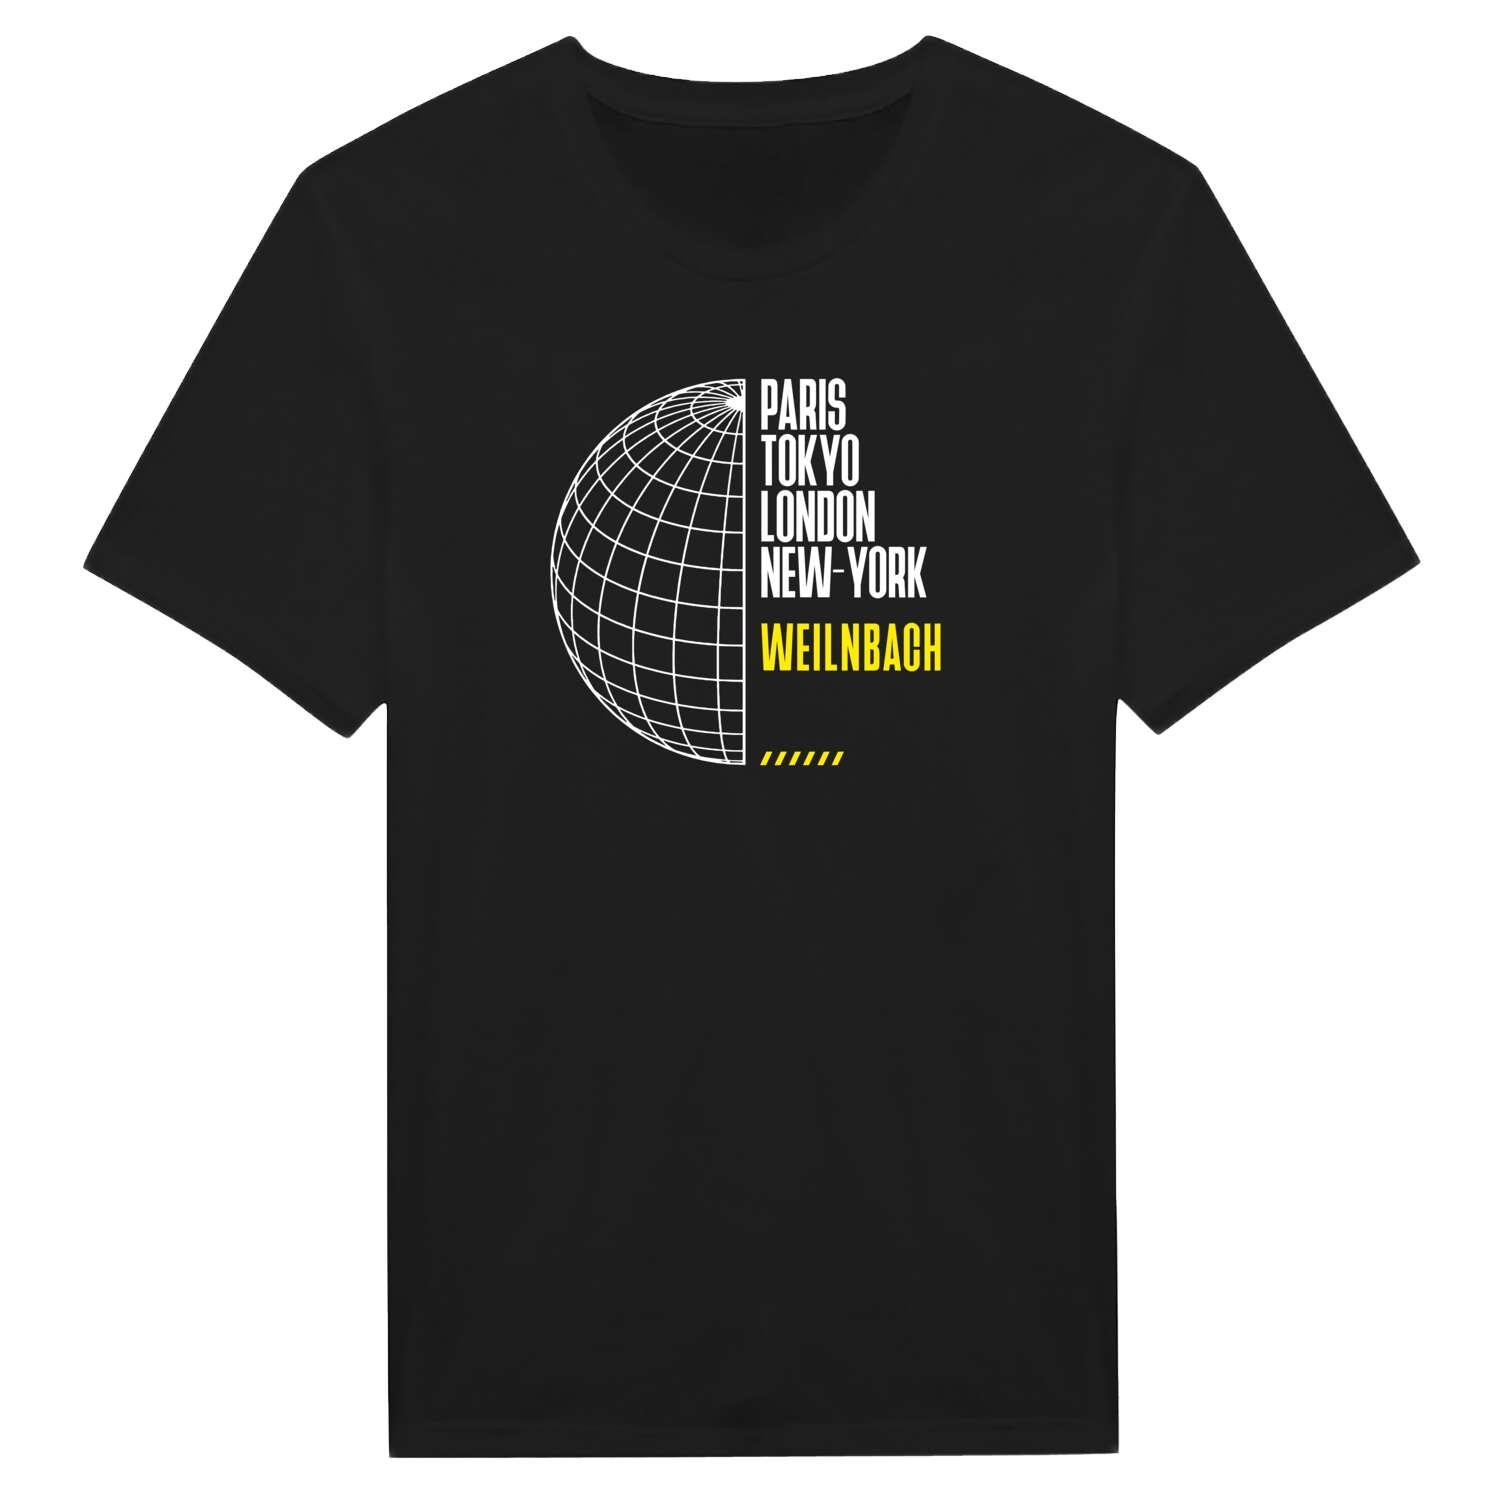 Weilnbach T-Shirt »Paris Tokyo London«